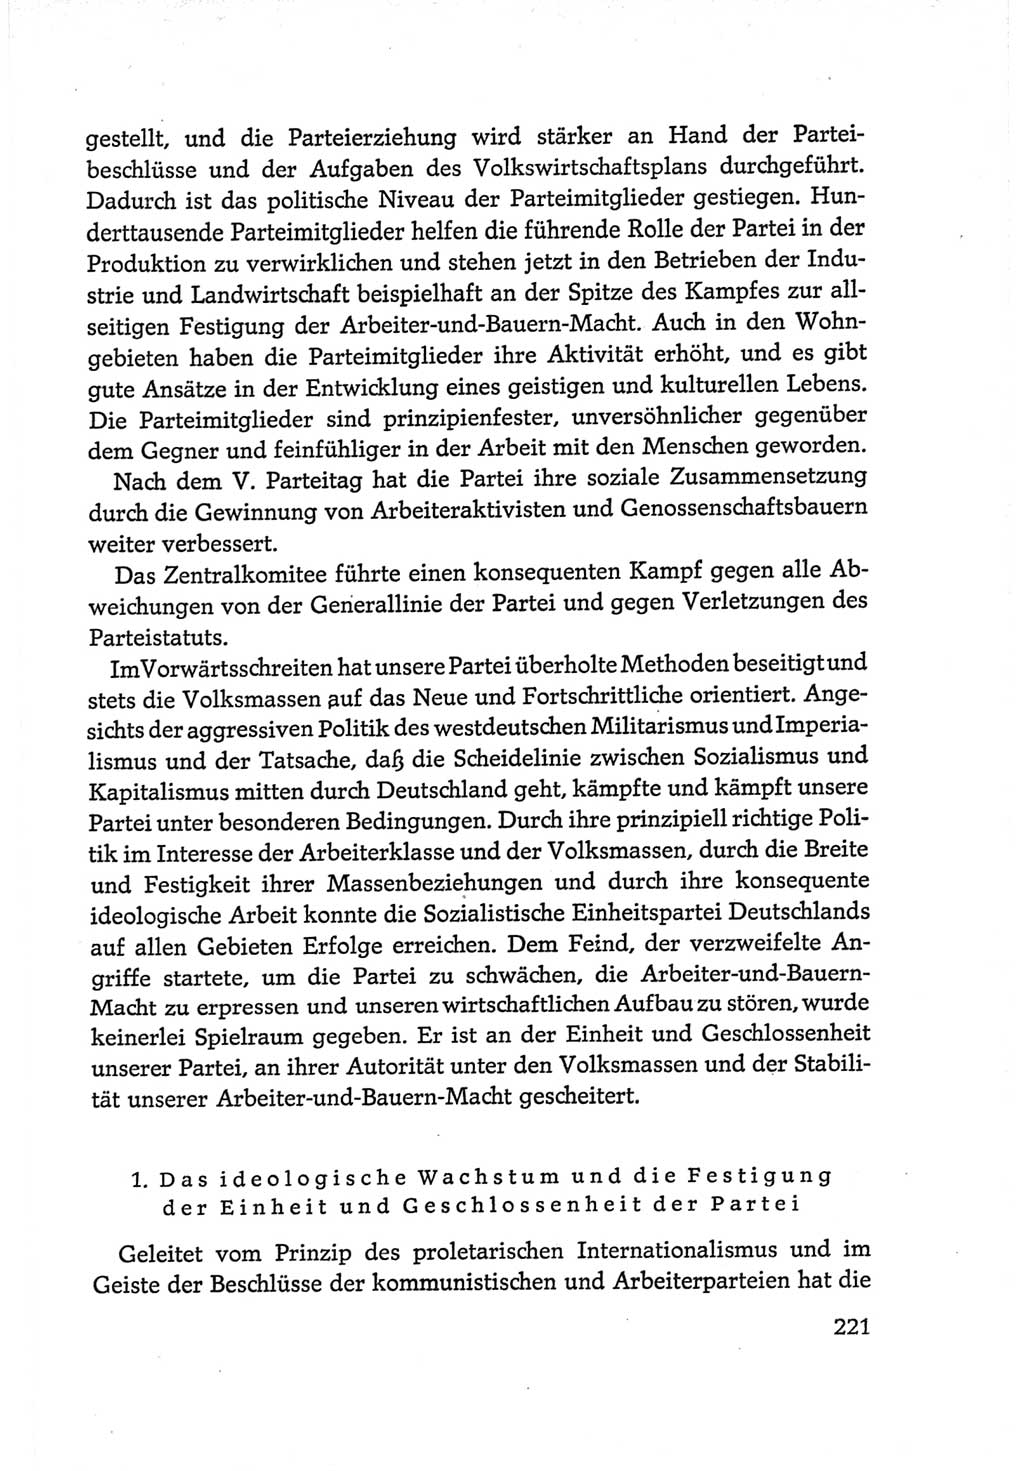 Protokoll der Verhandlungen des Ⅵ. Parteitages der Sozialistischen Einheitspartei Deutschlands (SED) [Deutsche Demokratische Republik (DDR)] 1963, Band Ⅳ, Seite 221 (Prot. Verh. Ⅵ. PT SED DDR 1963, Bd. Ⅳ, S. 221)